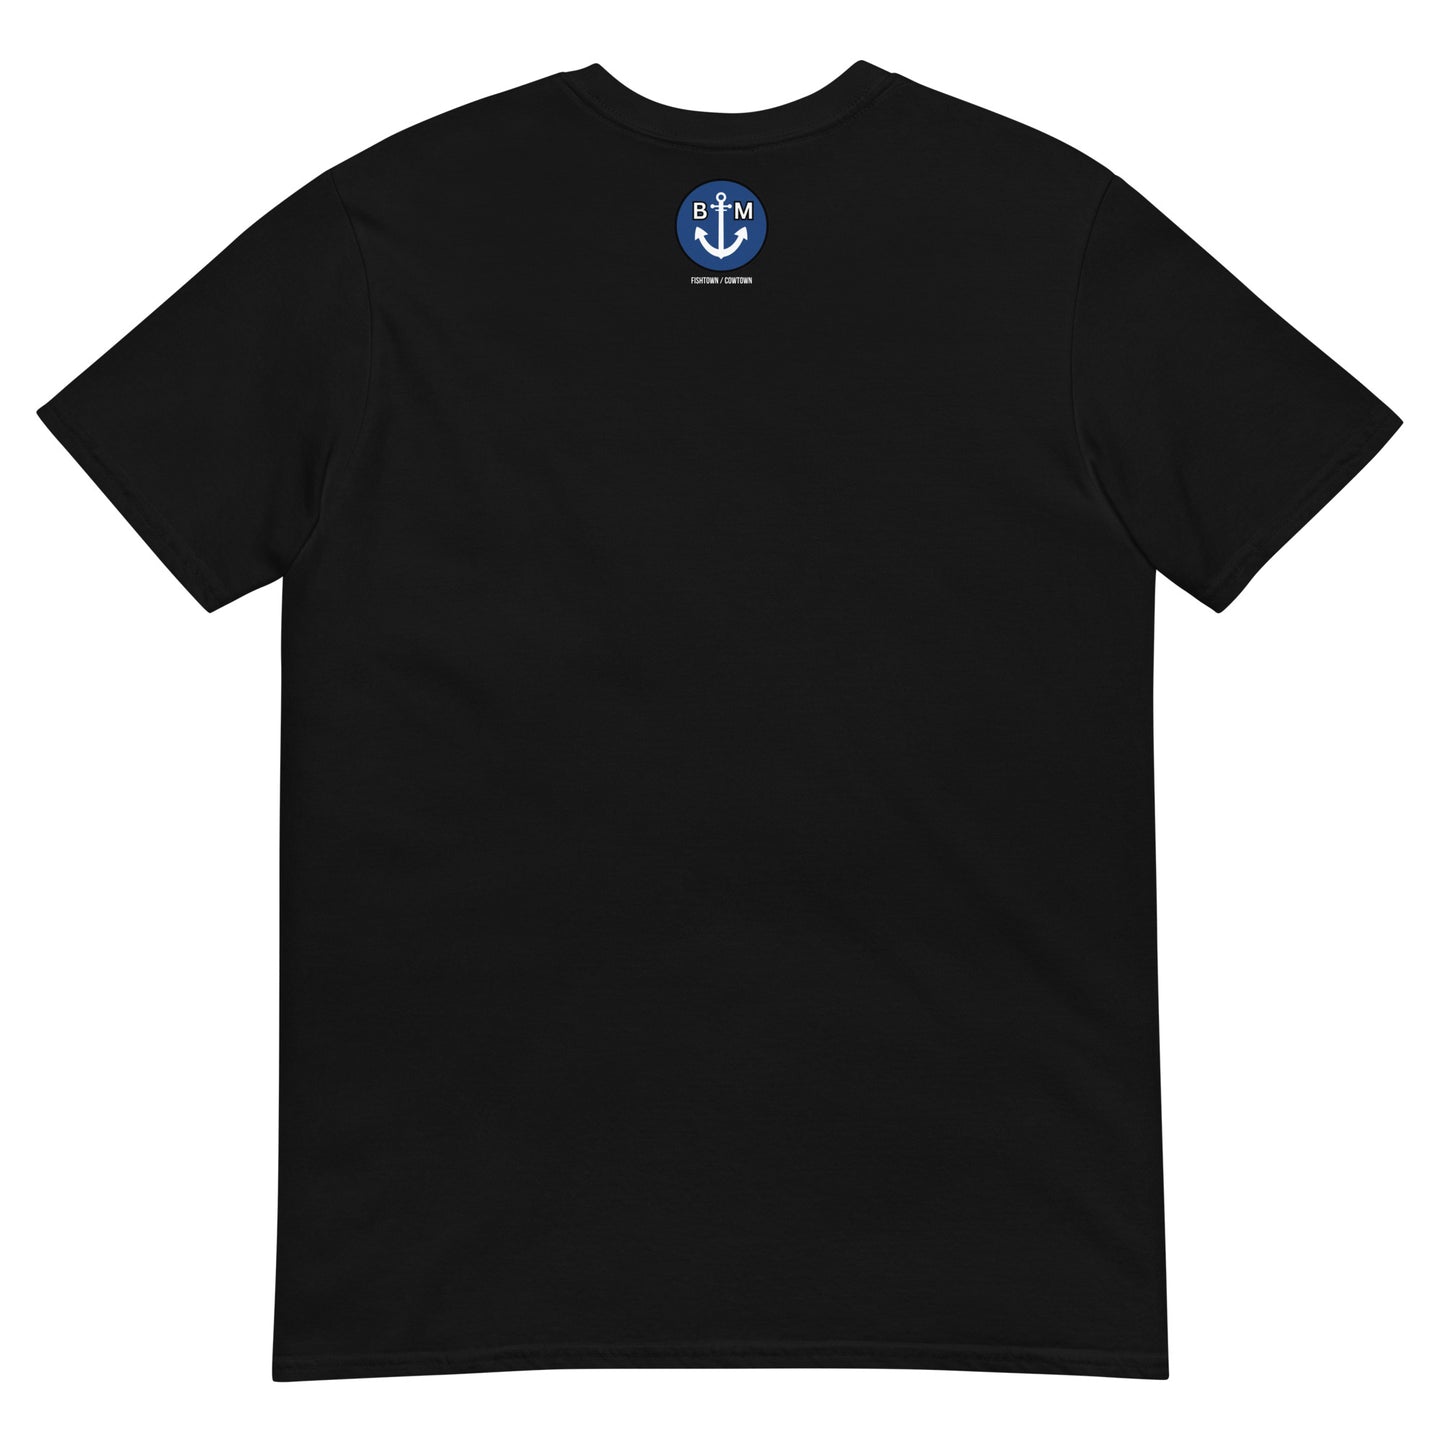 BRIXHAM BM Trawler Short-Sleeve Unisex T-Shirt back with BM logo black